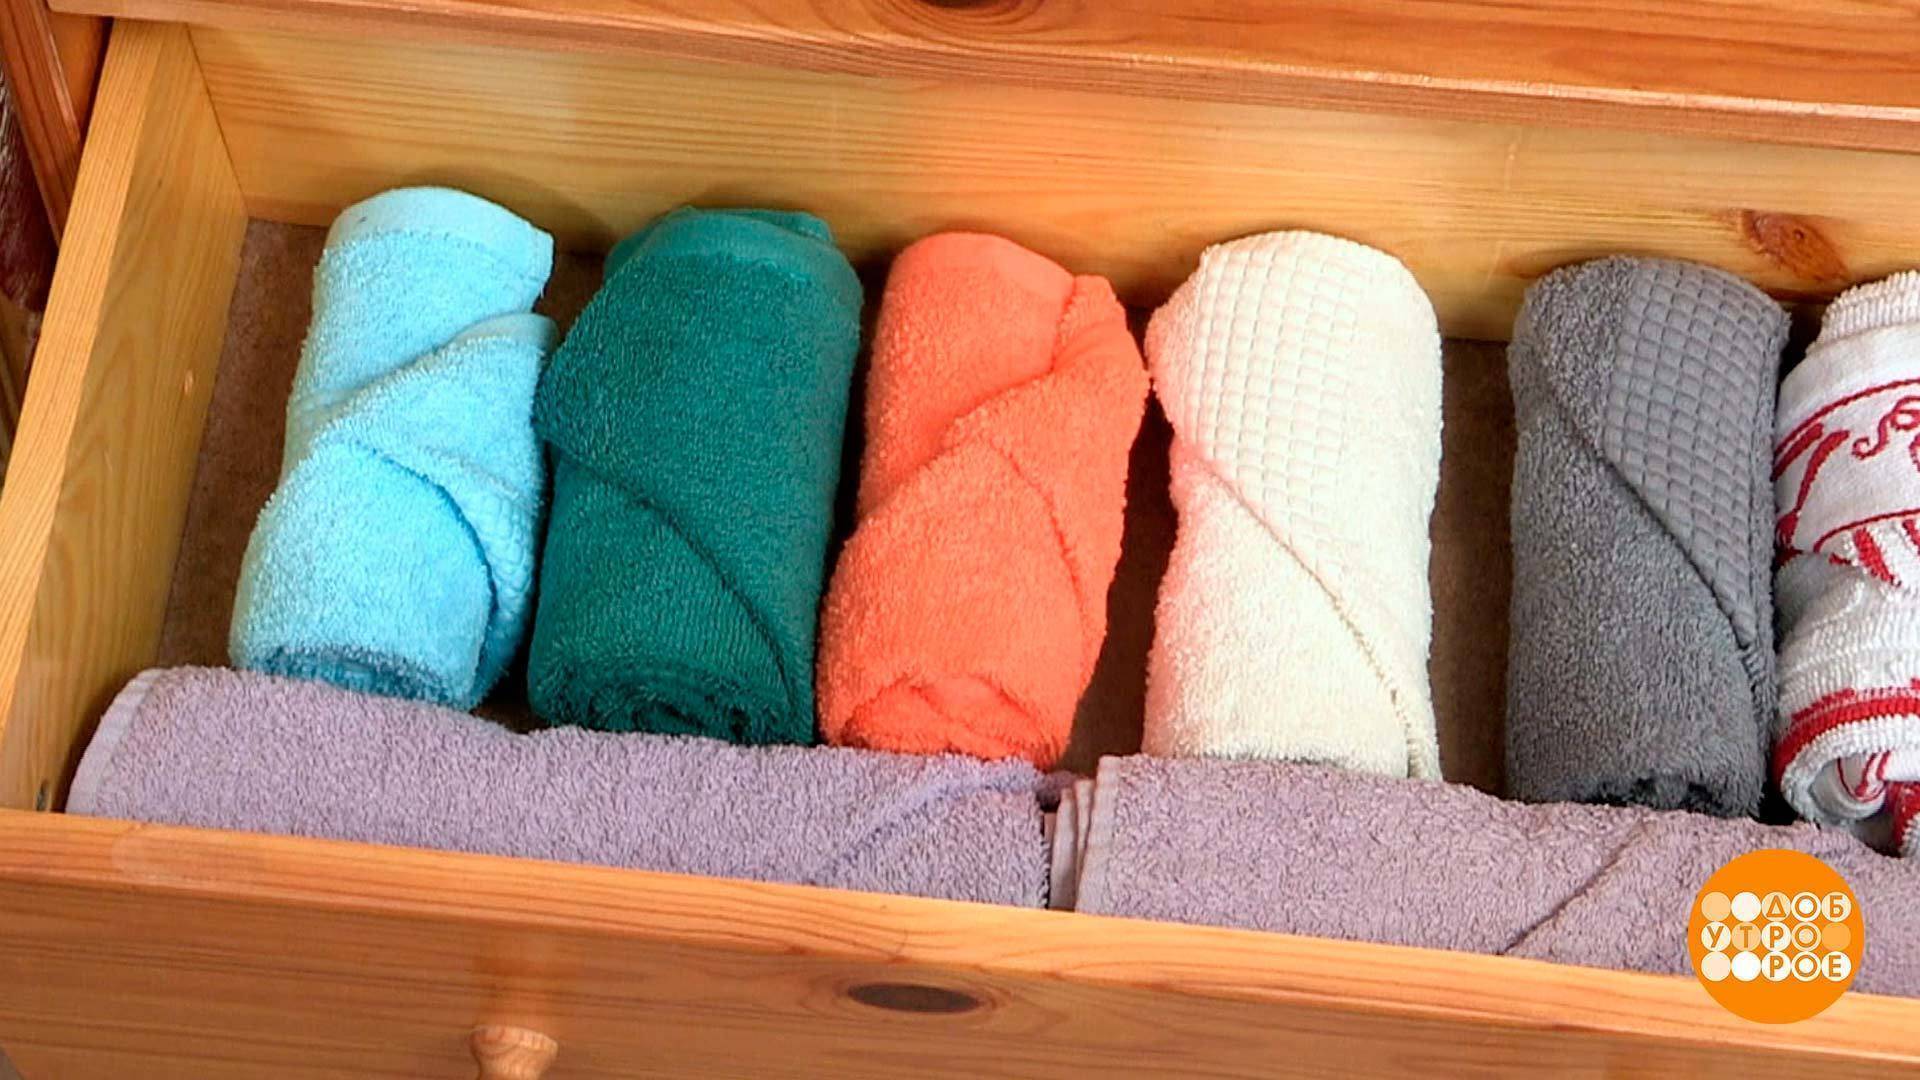 Складываем полотенце для подарка: интересно, красиво, впечатляюще.